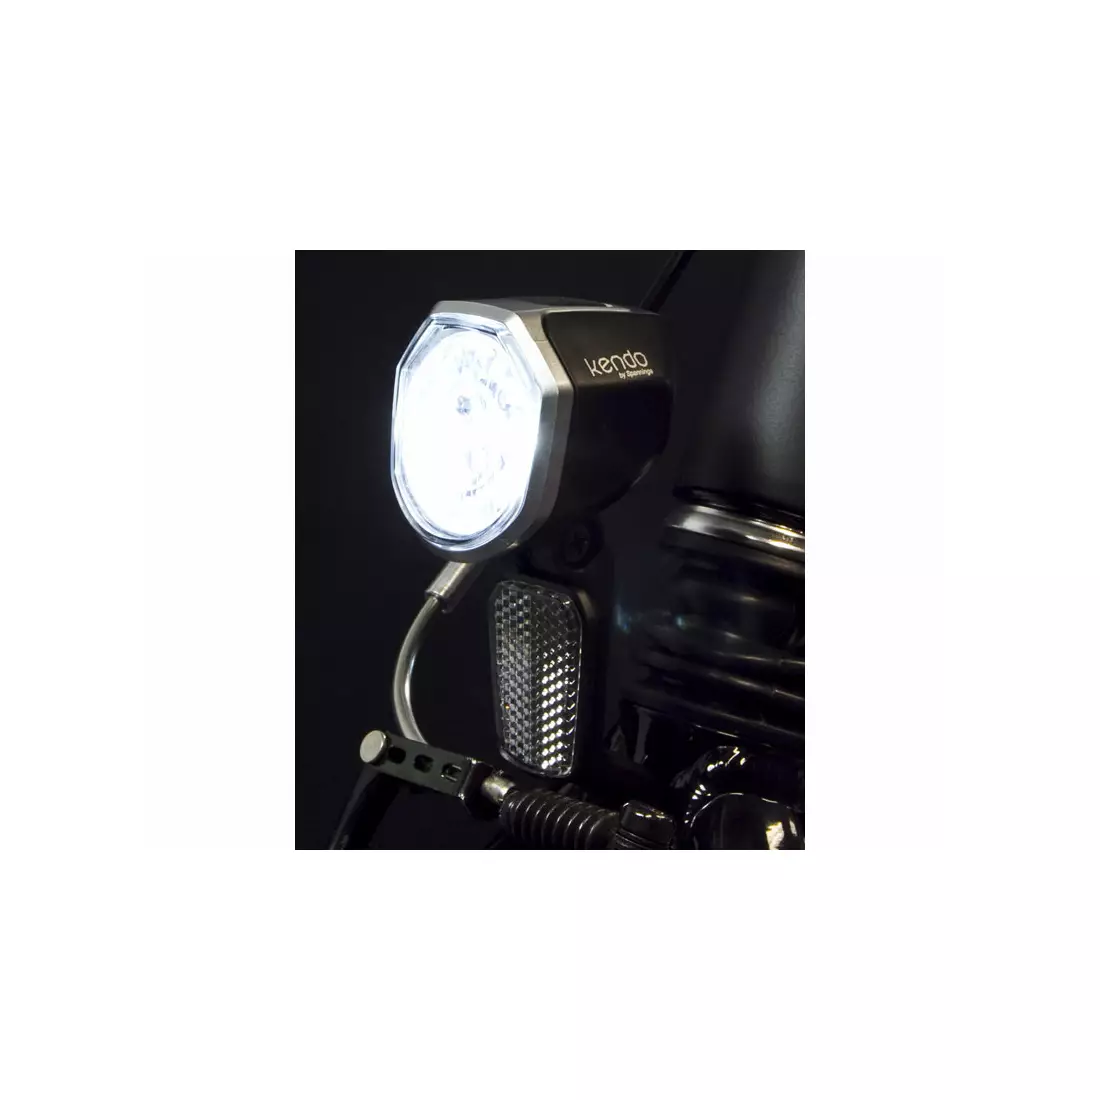 Přední světlo SPANNINGA KENDO+ XE 30 luxů / 120 lumenů pro jízdní kola e-bike 6-36VDC (NEW) SNG-H057088